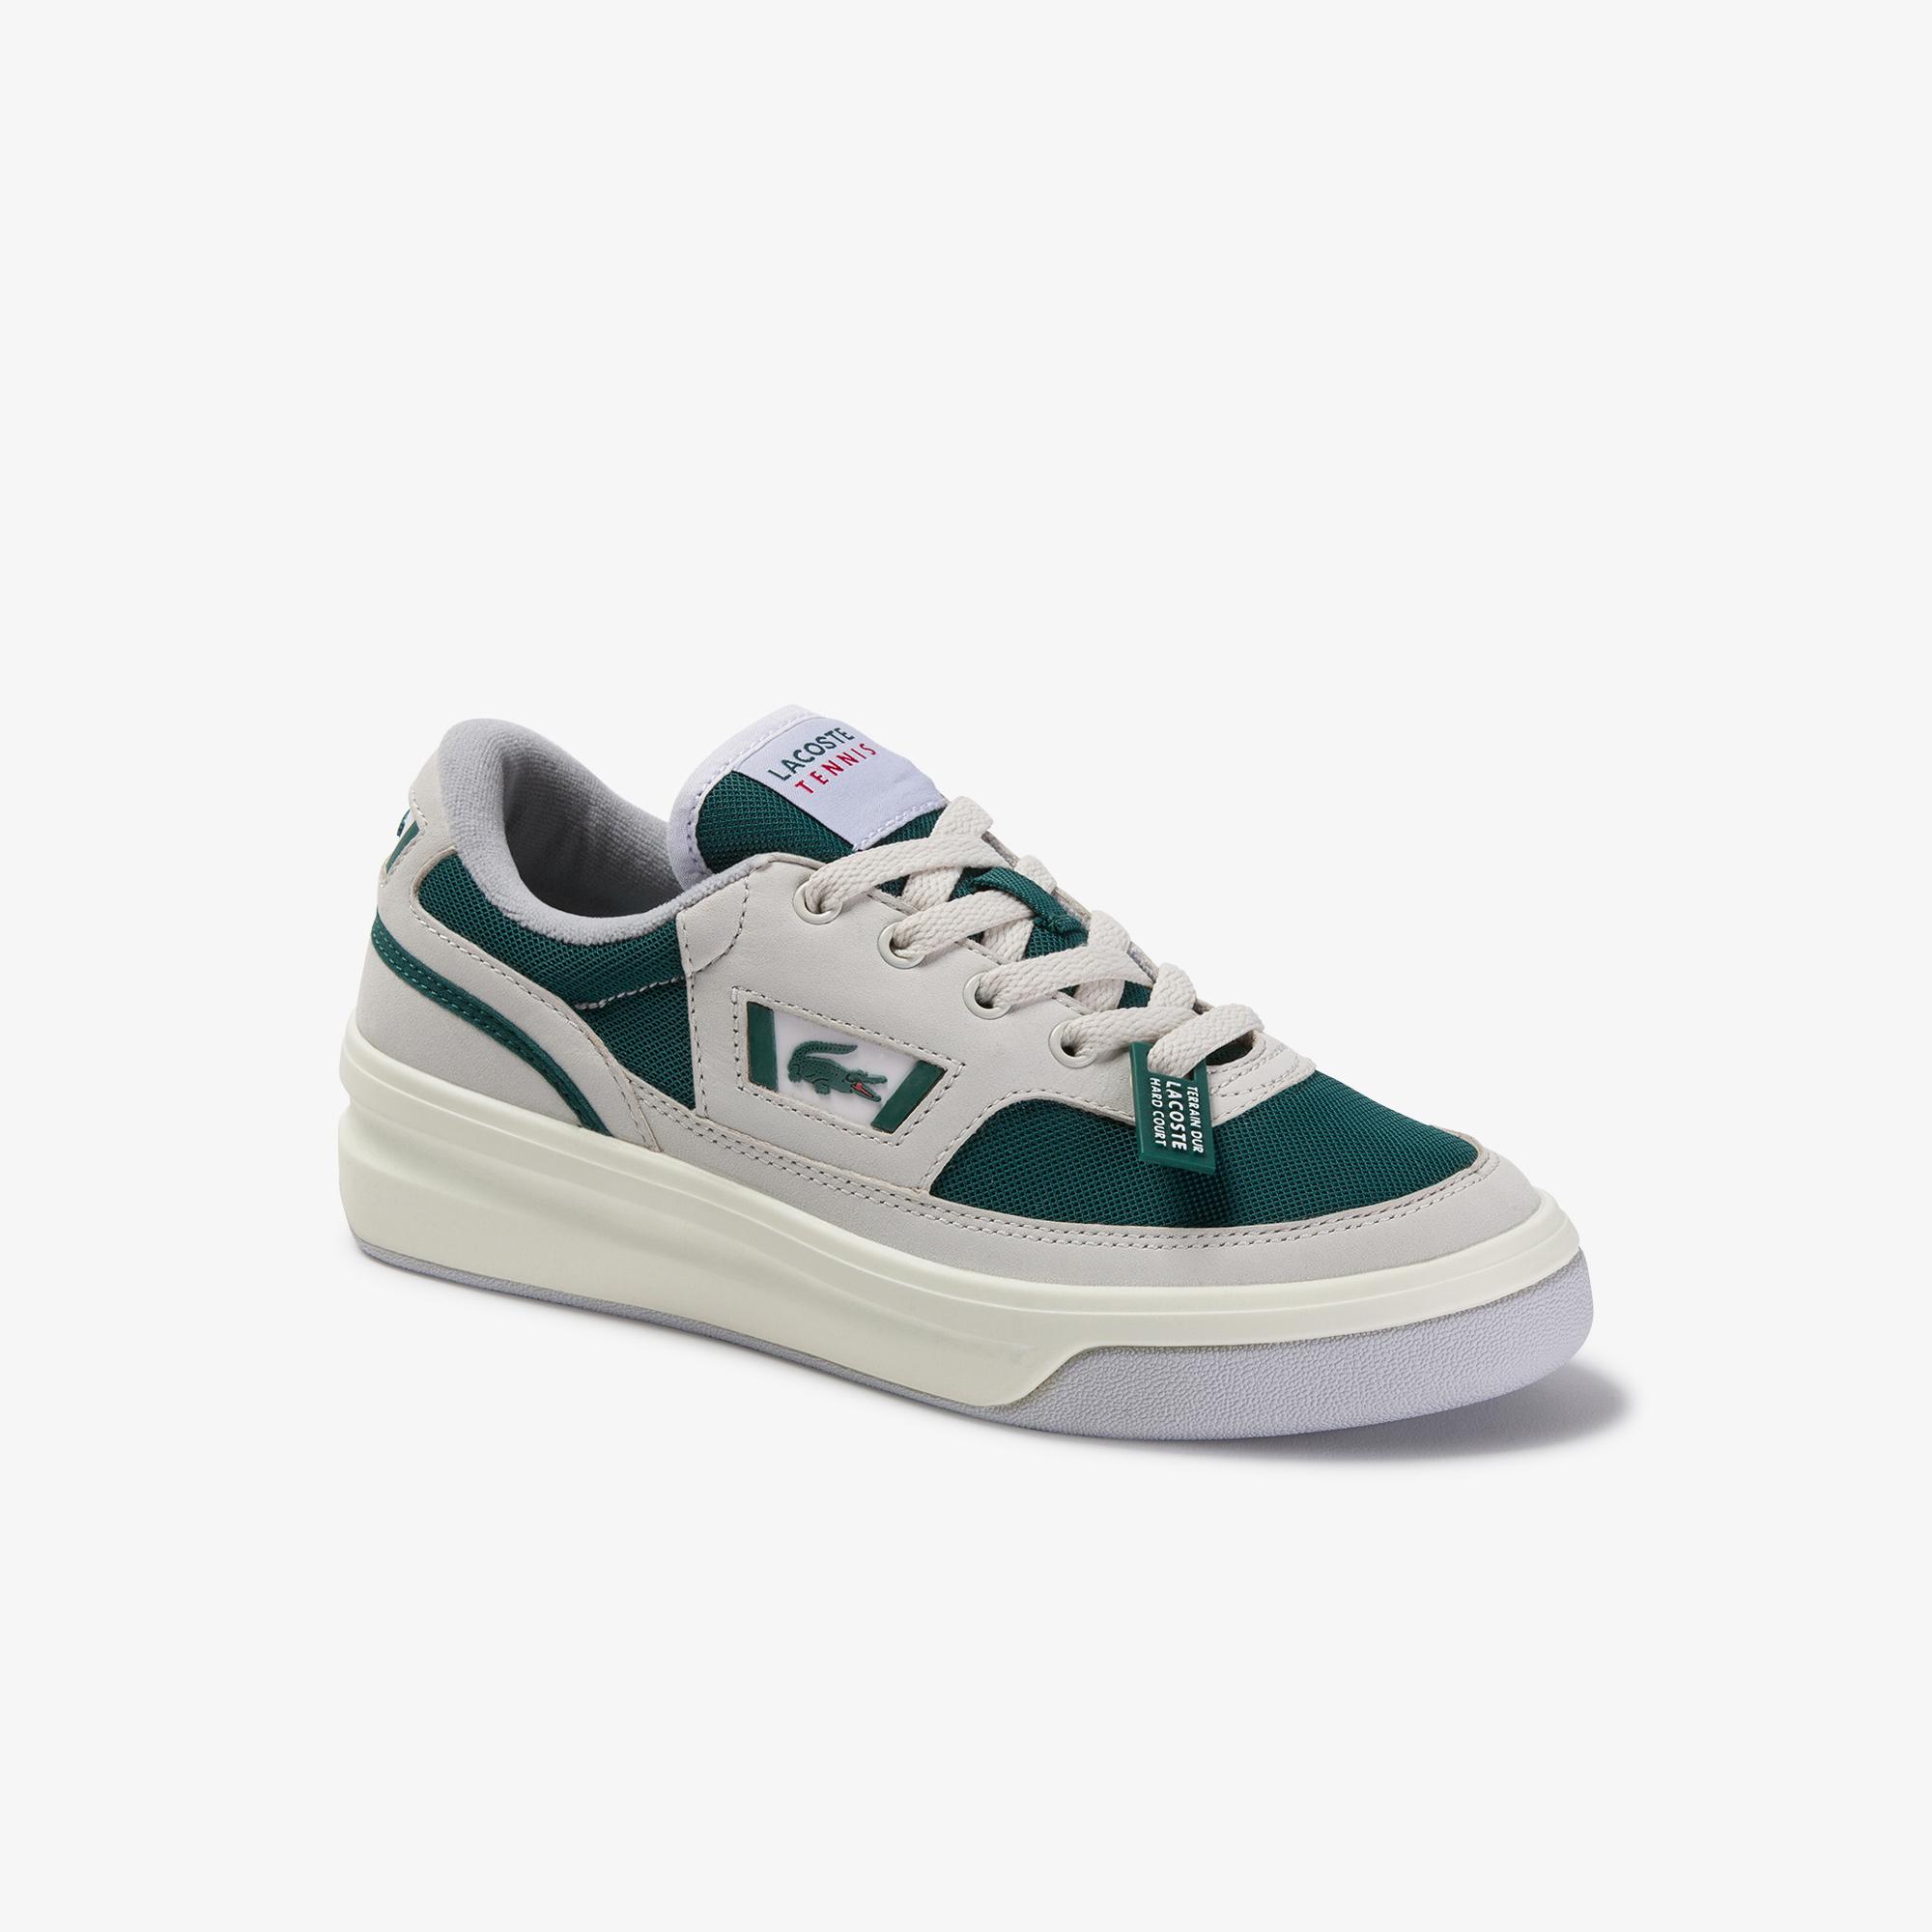 Lacoste G80 Og 120 1 Sfa Kadın Beyaz - Koyu Yeşil Deri Sneaker. 2